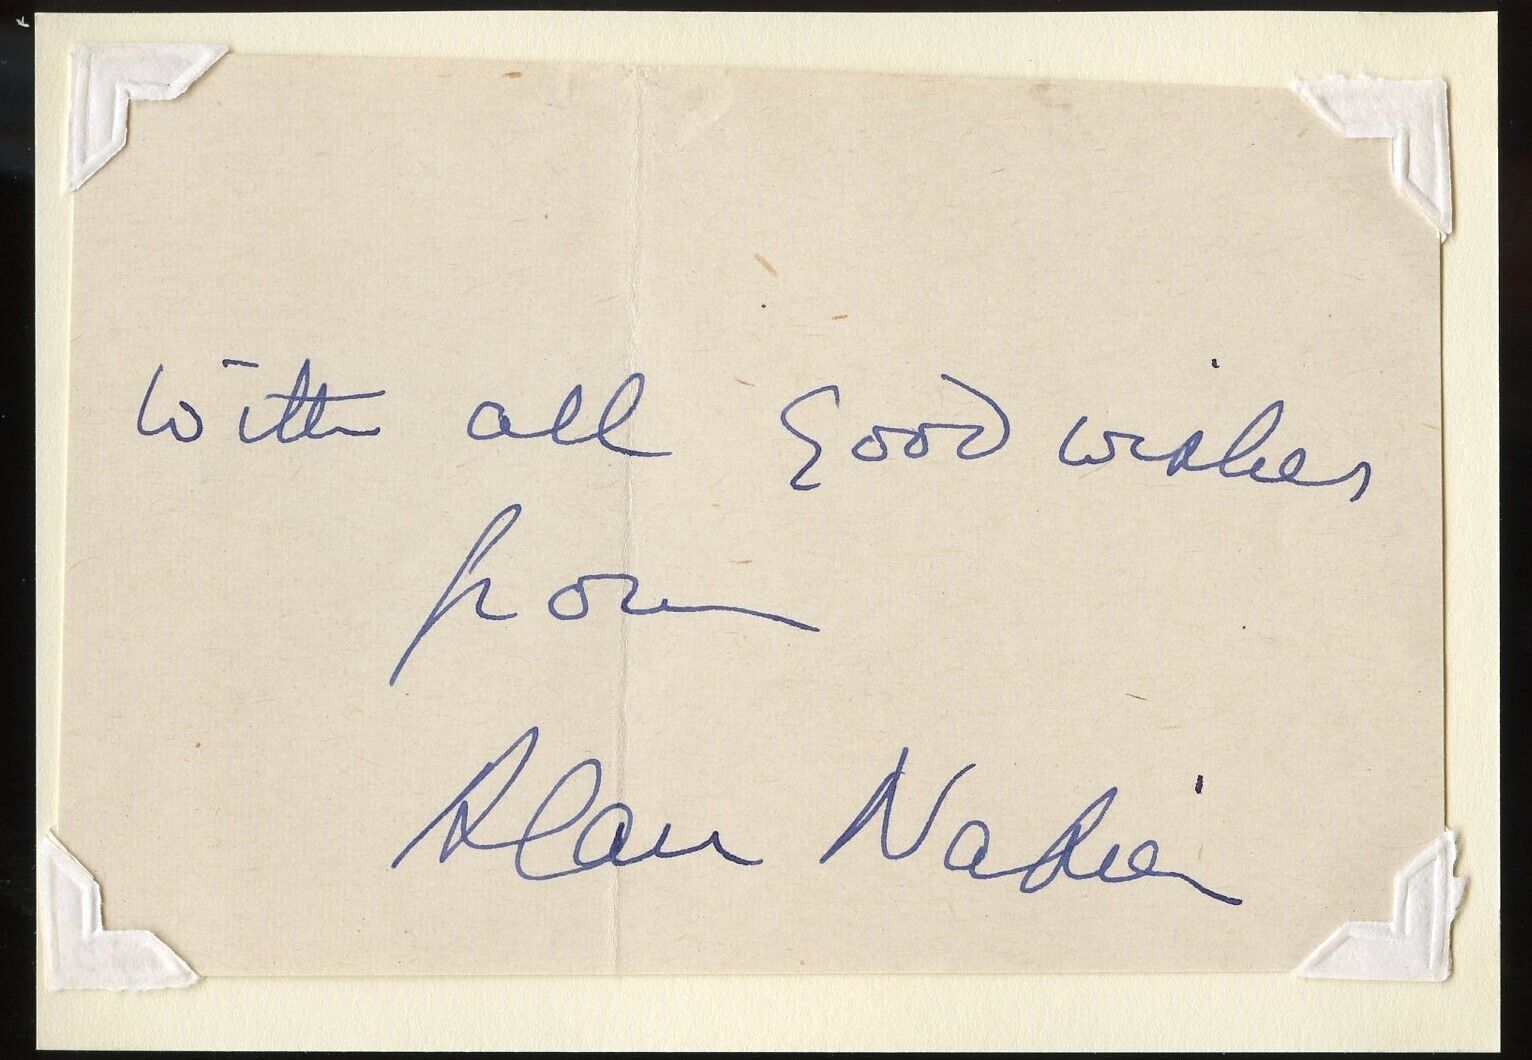 Alan Napier d1988 signed autograph auto 3x5 Cut Batman Alfred Pennyworth